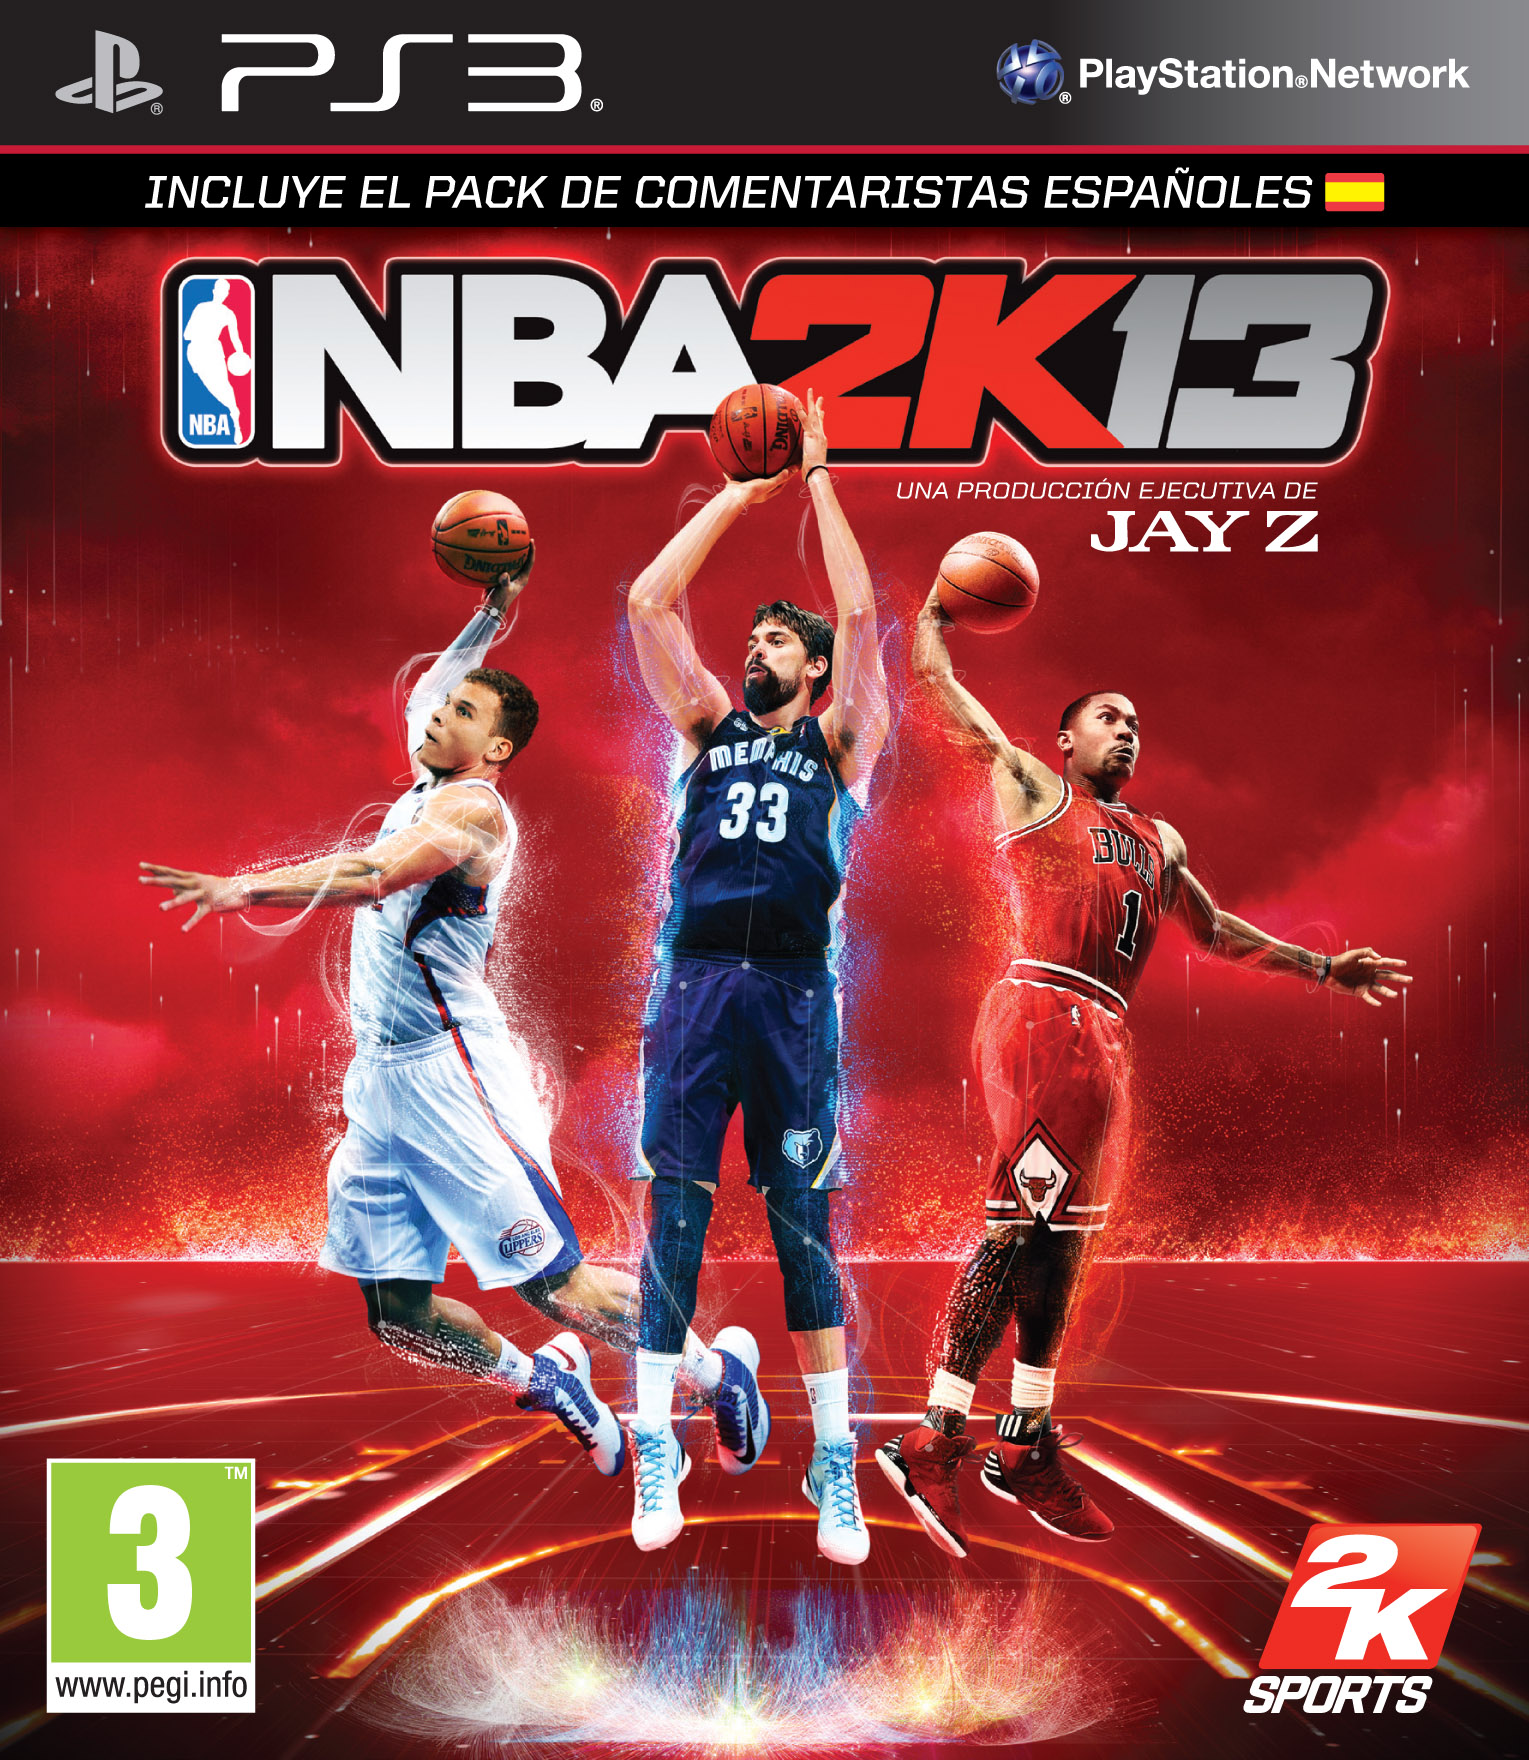 NBA 2K13 - Cover España